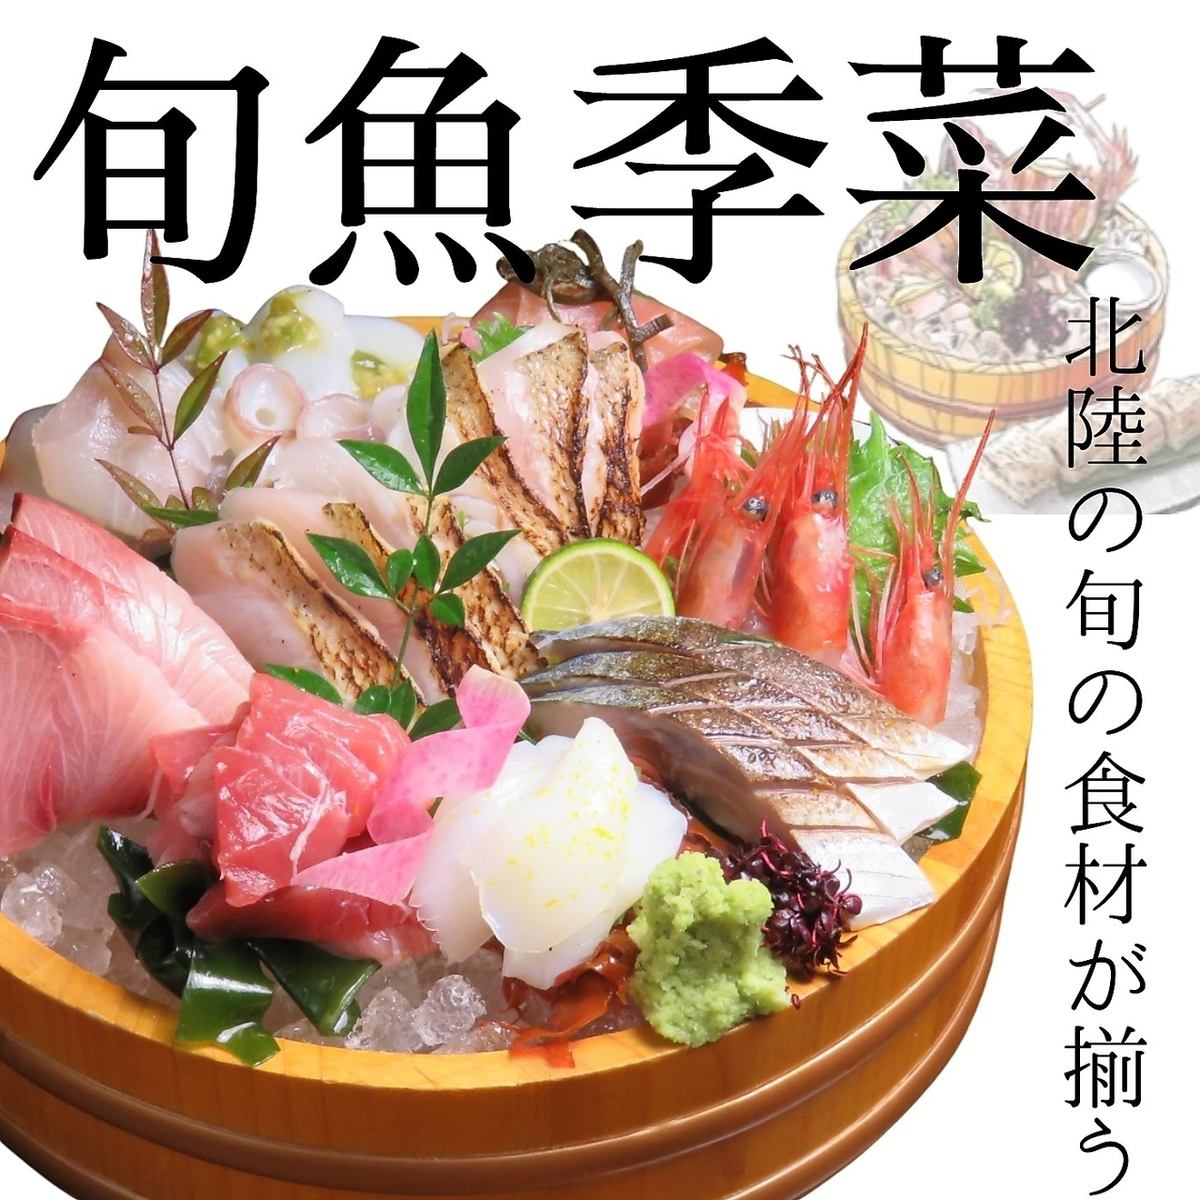 您可以享用廚師在市場購買的能登金澤早晨捕獲的鮮魚生魚片。